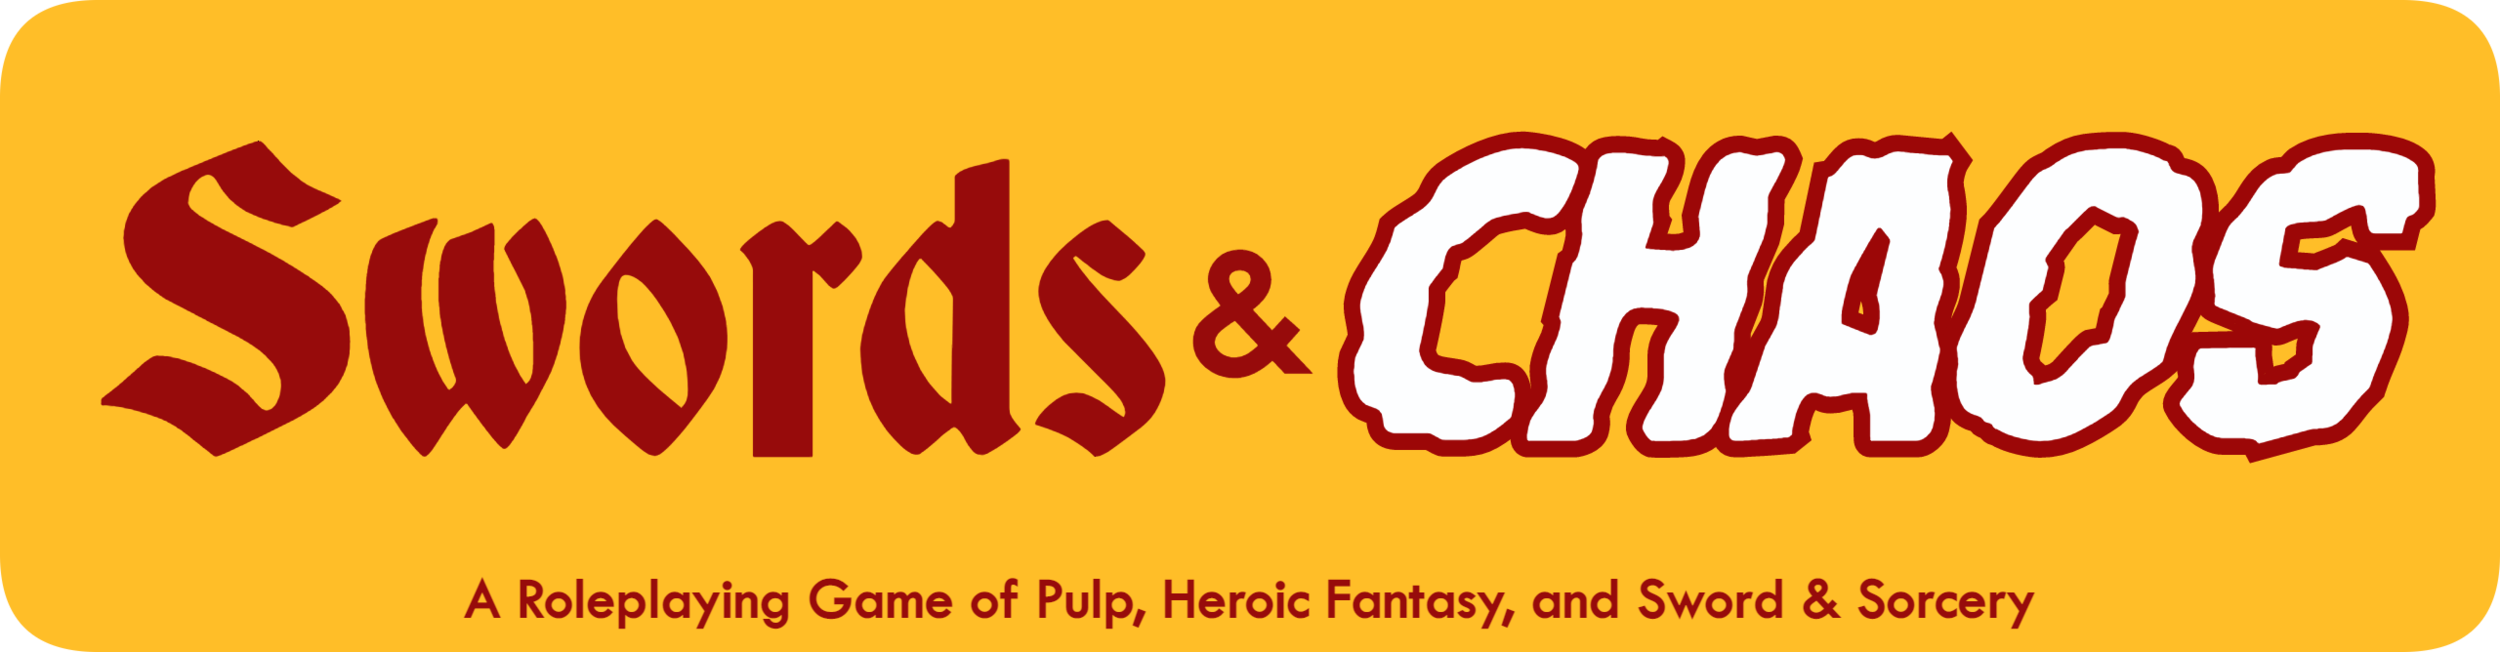 Swords & Chaos Logo